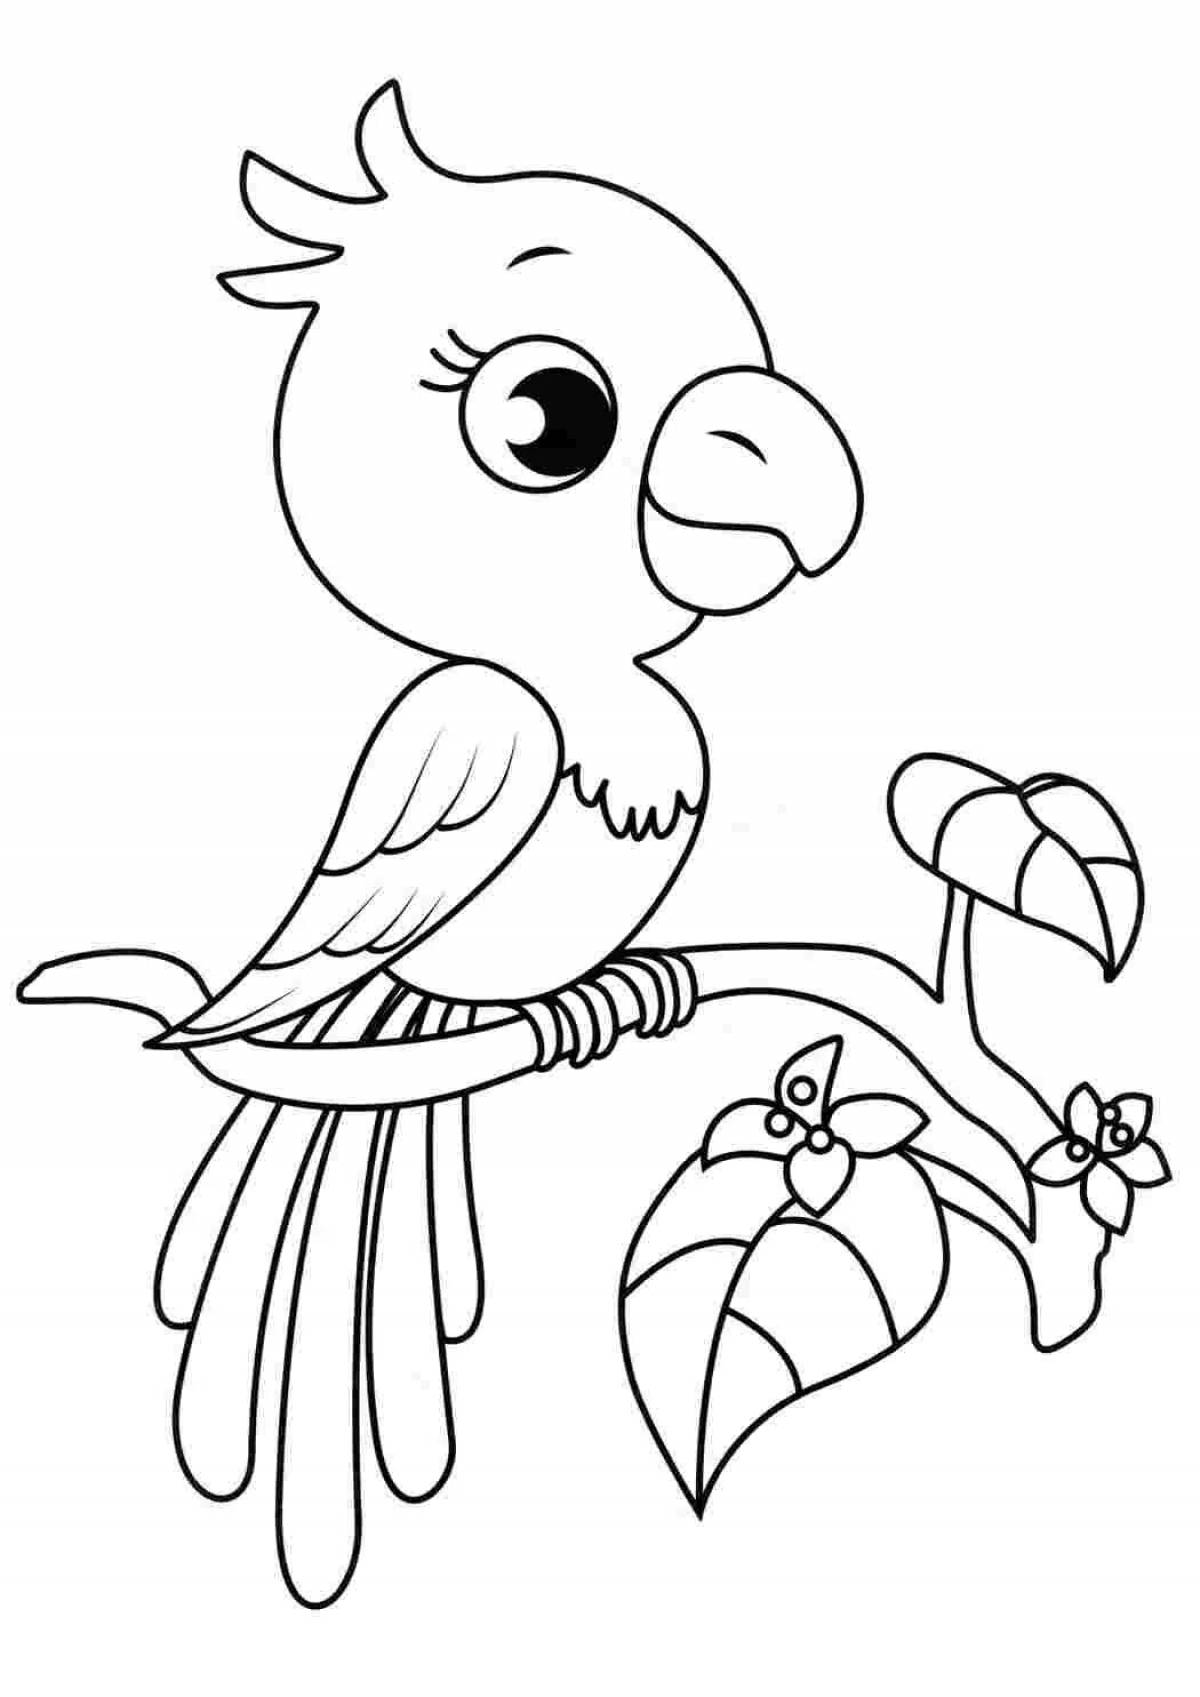 Замечательная раскраска попугай для детей 6-7 лет